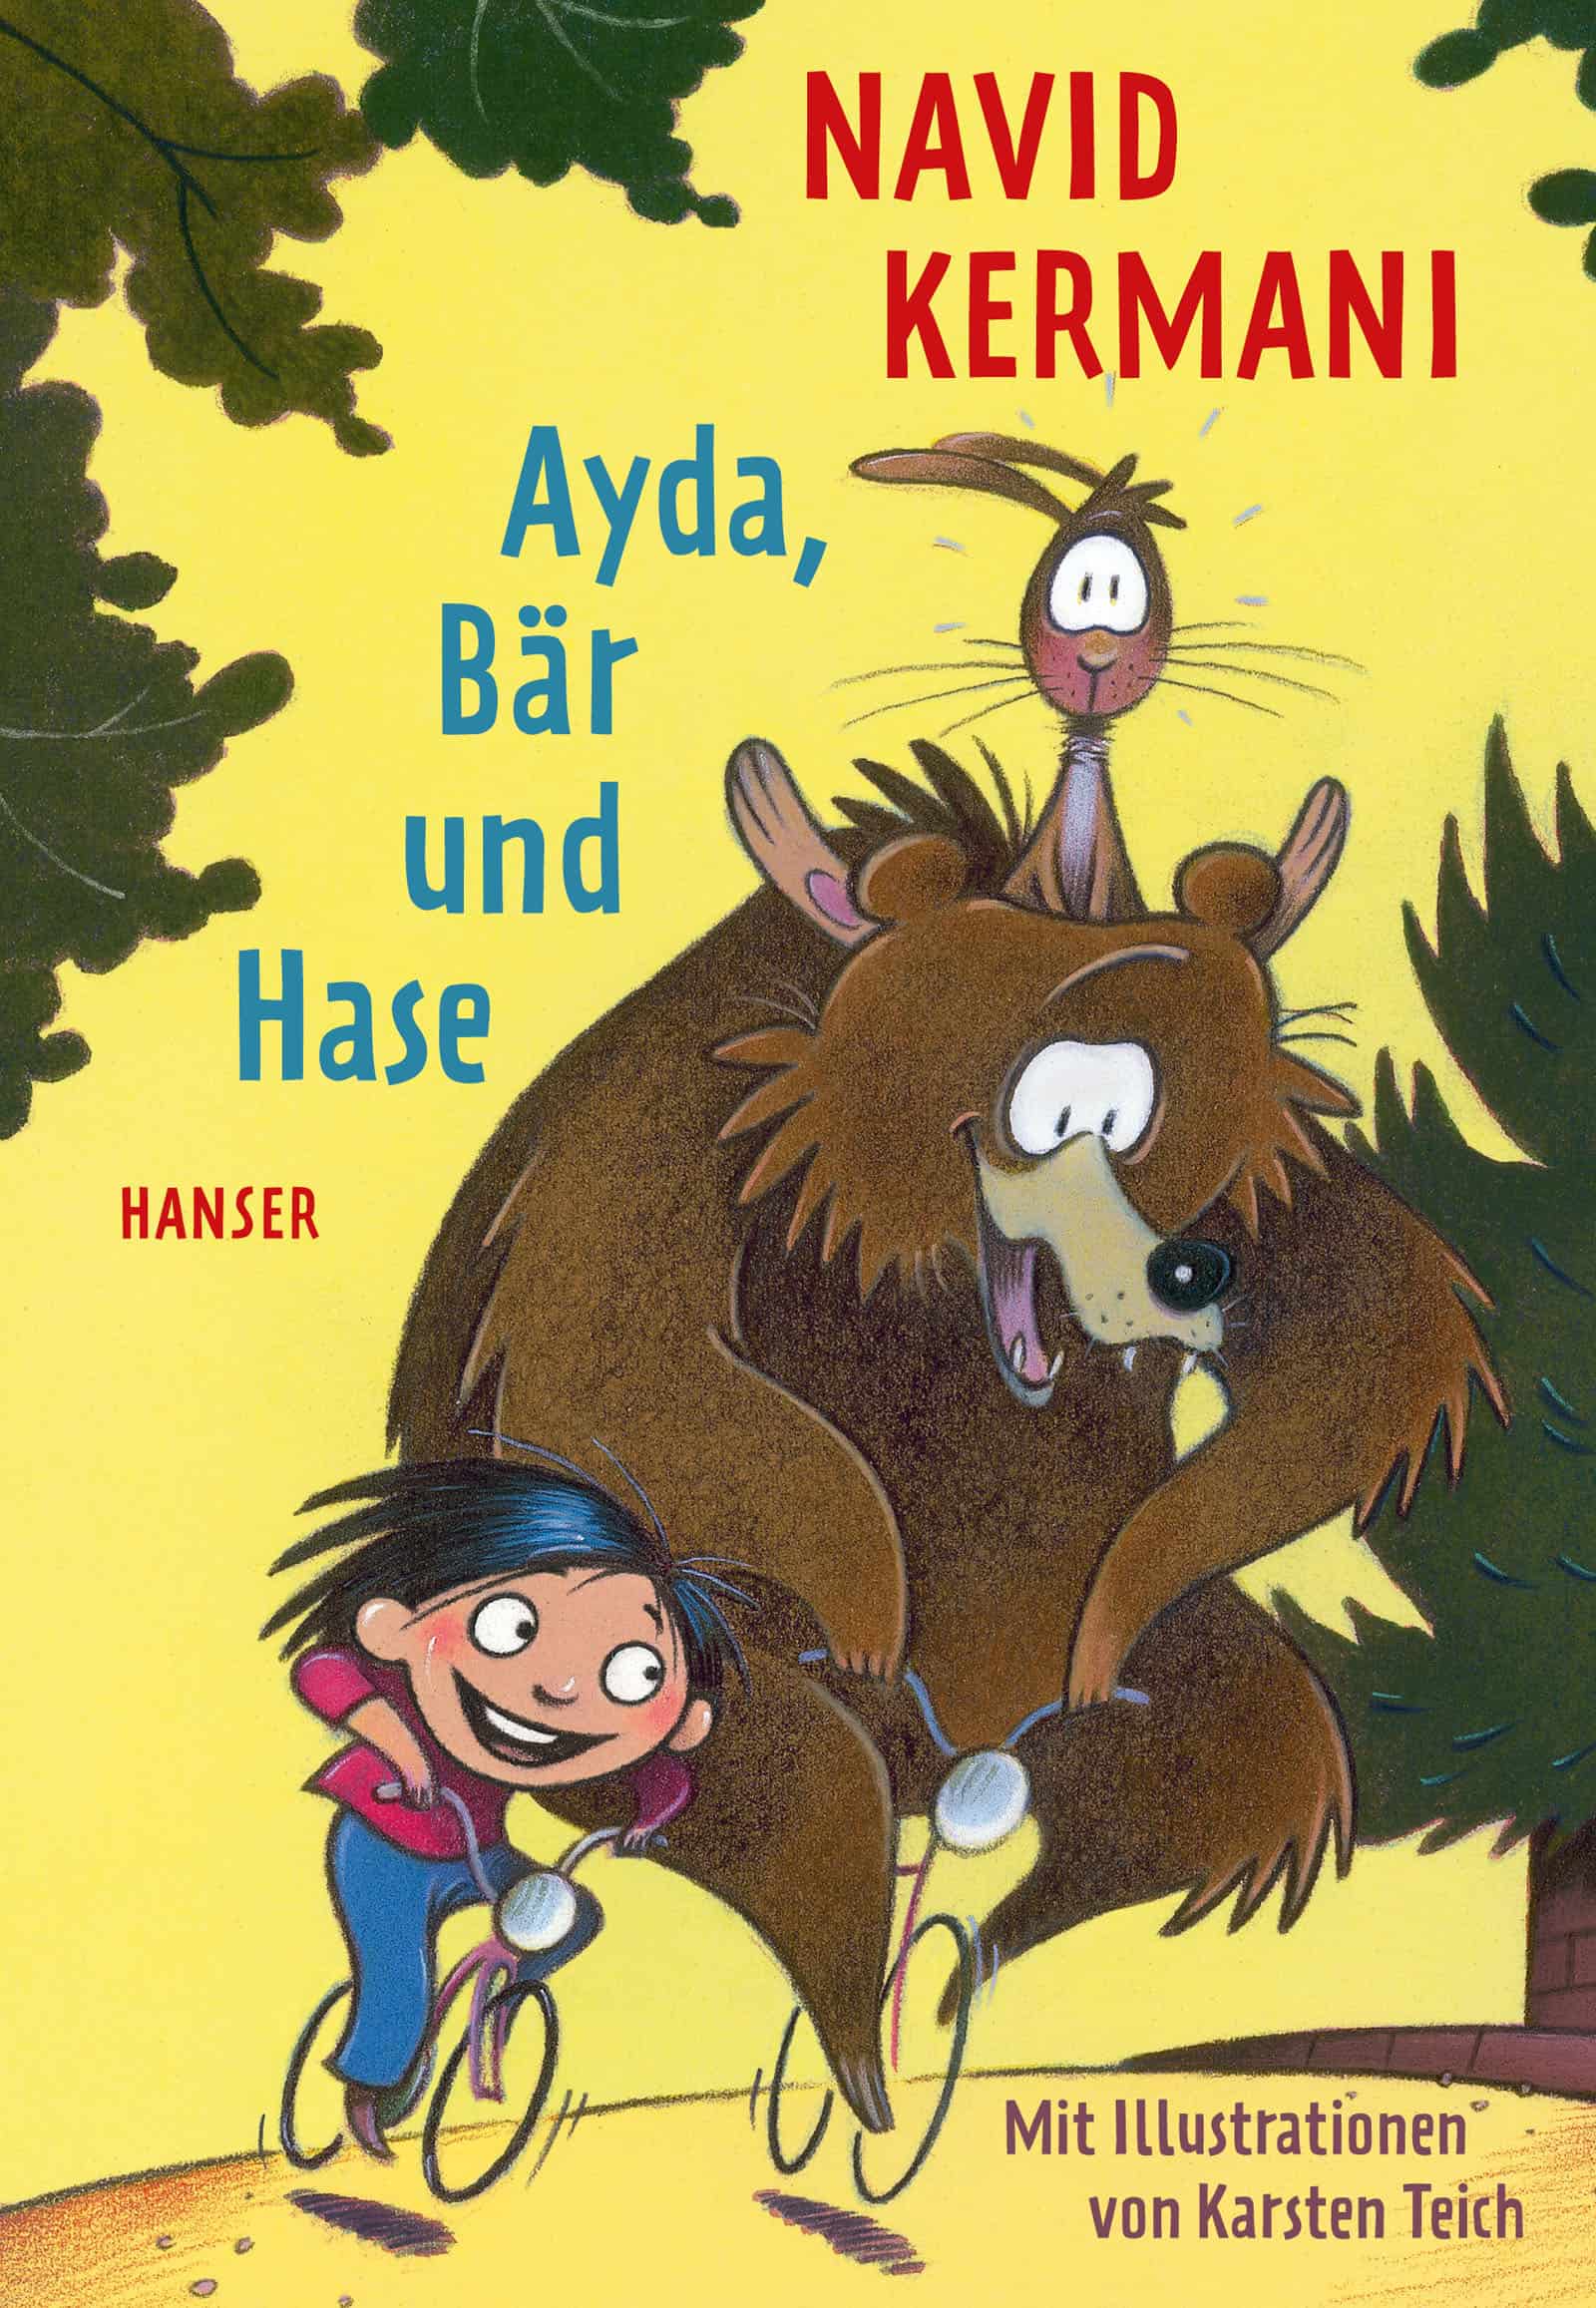 Kermani, Navid: Ayda, Bär und Hase